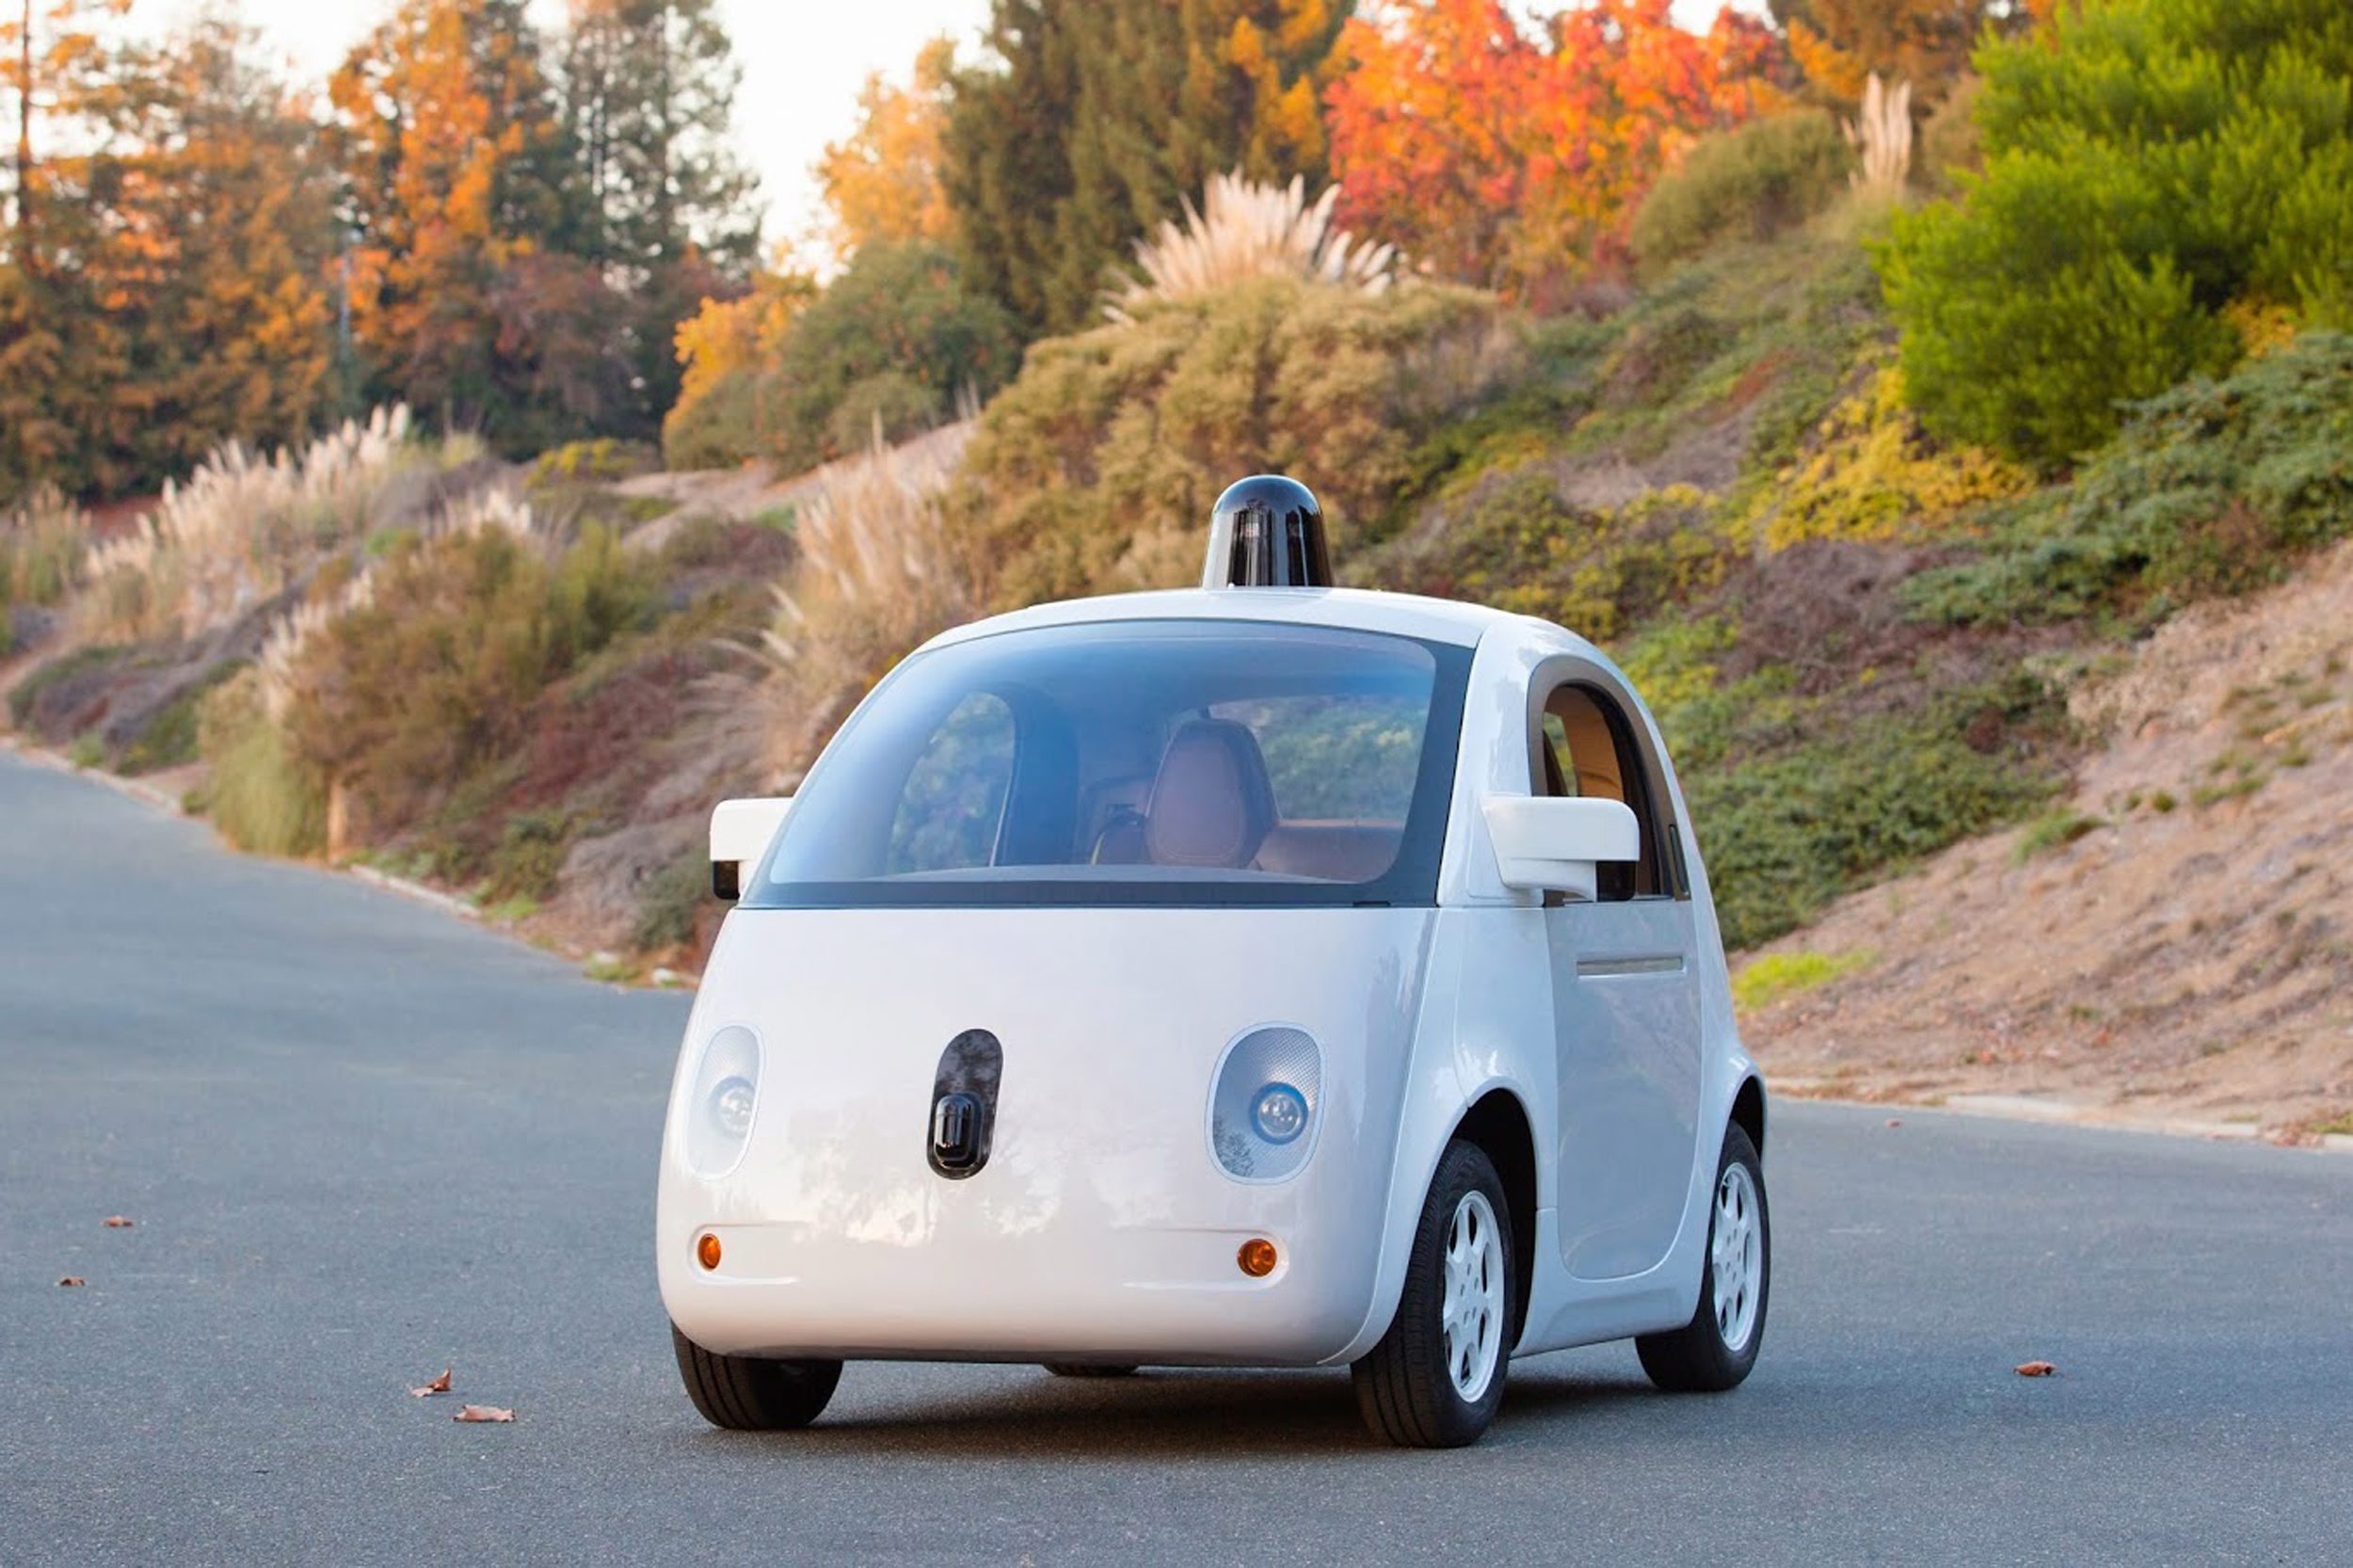 Ιδού το αυτοκίνητο χωρίς οδηγό της Google